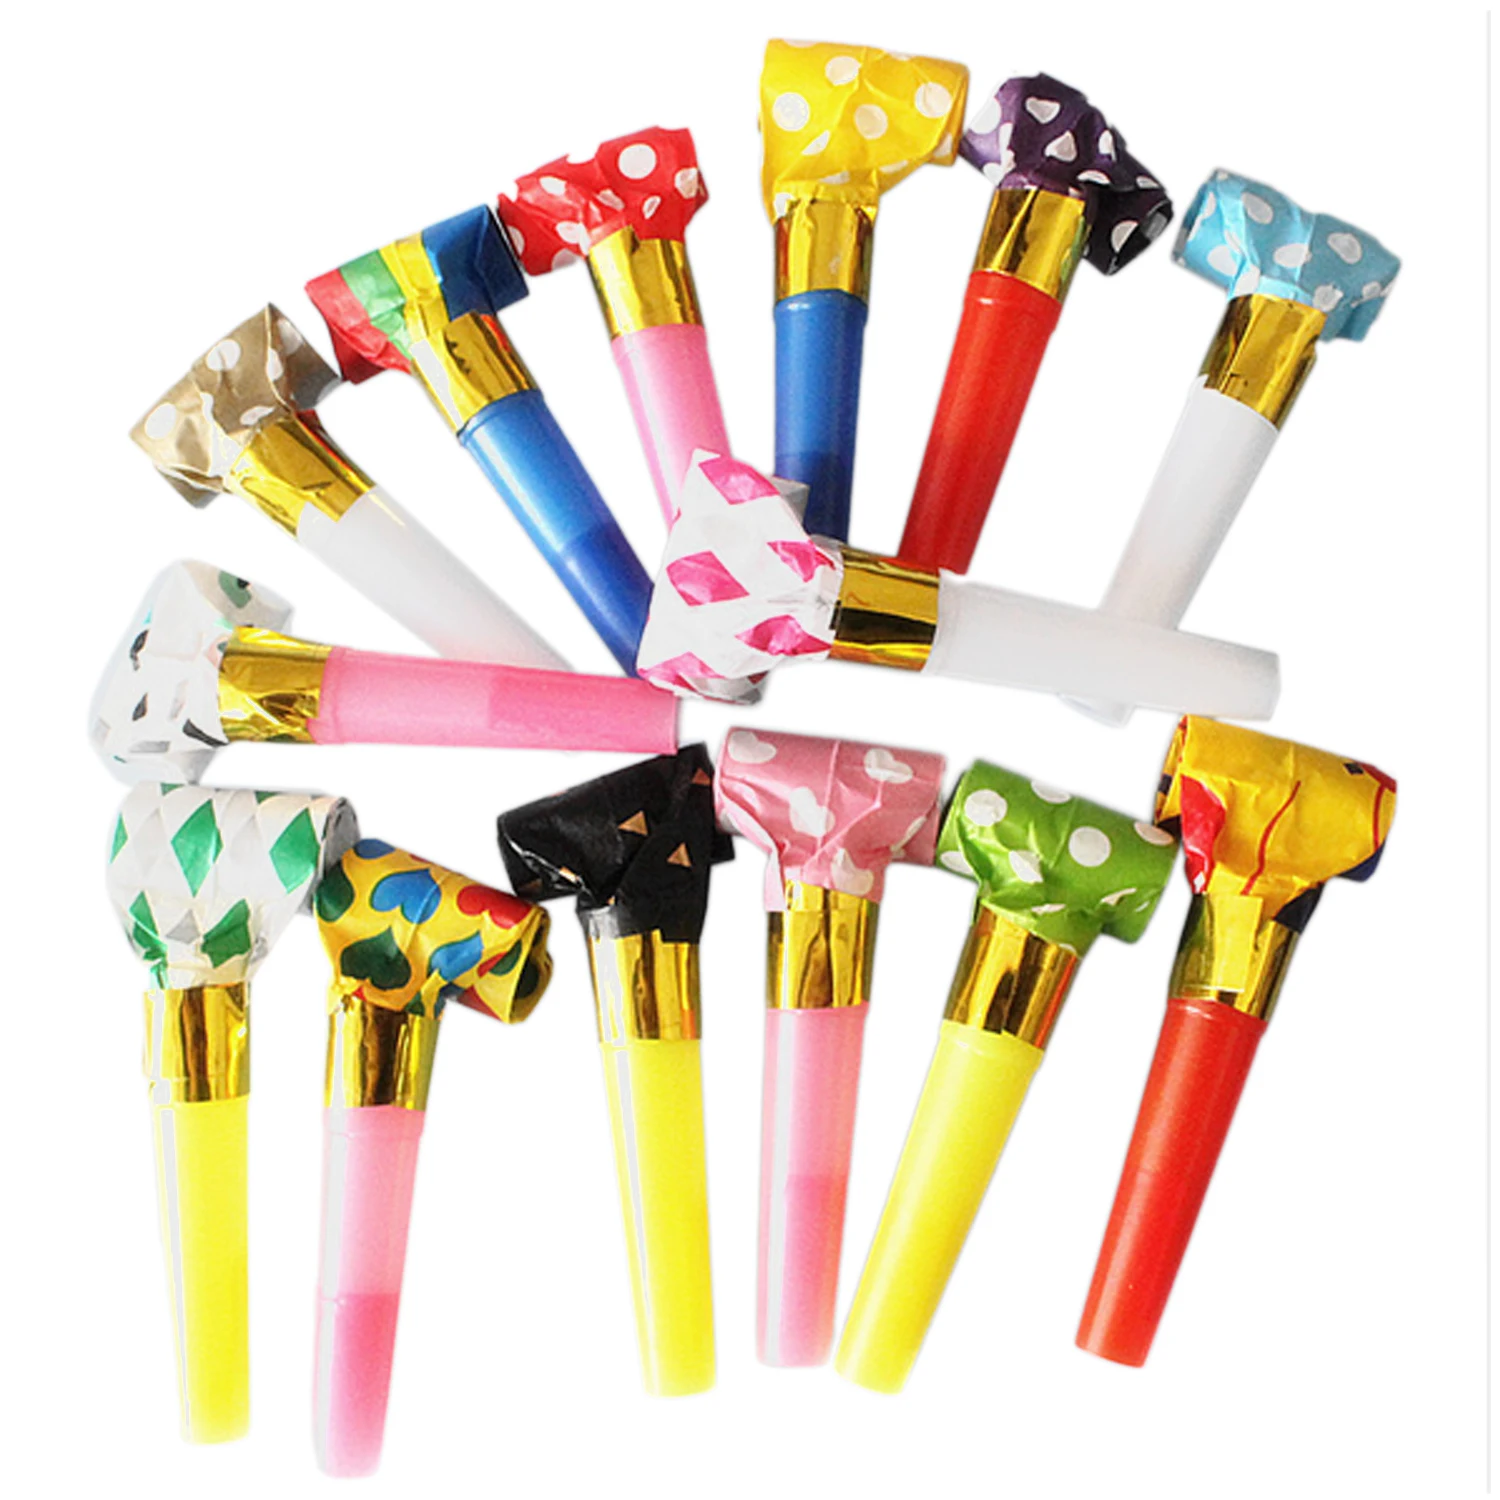 Behogar 20 шт Разноцветные вечерние рога Noisemakers Blow outs Whistles игрушки для дня рождения сувениры случайный стиль